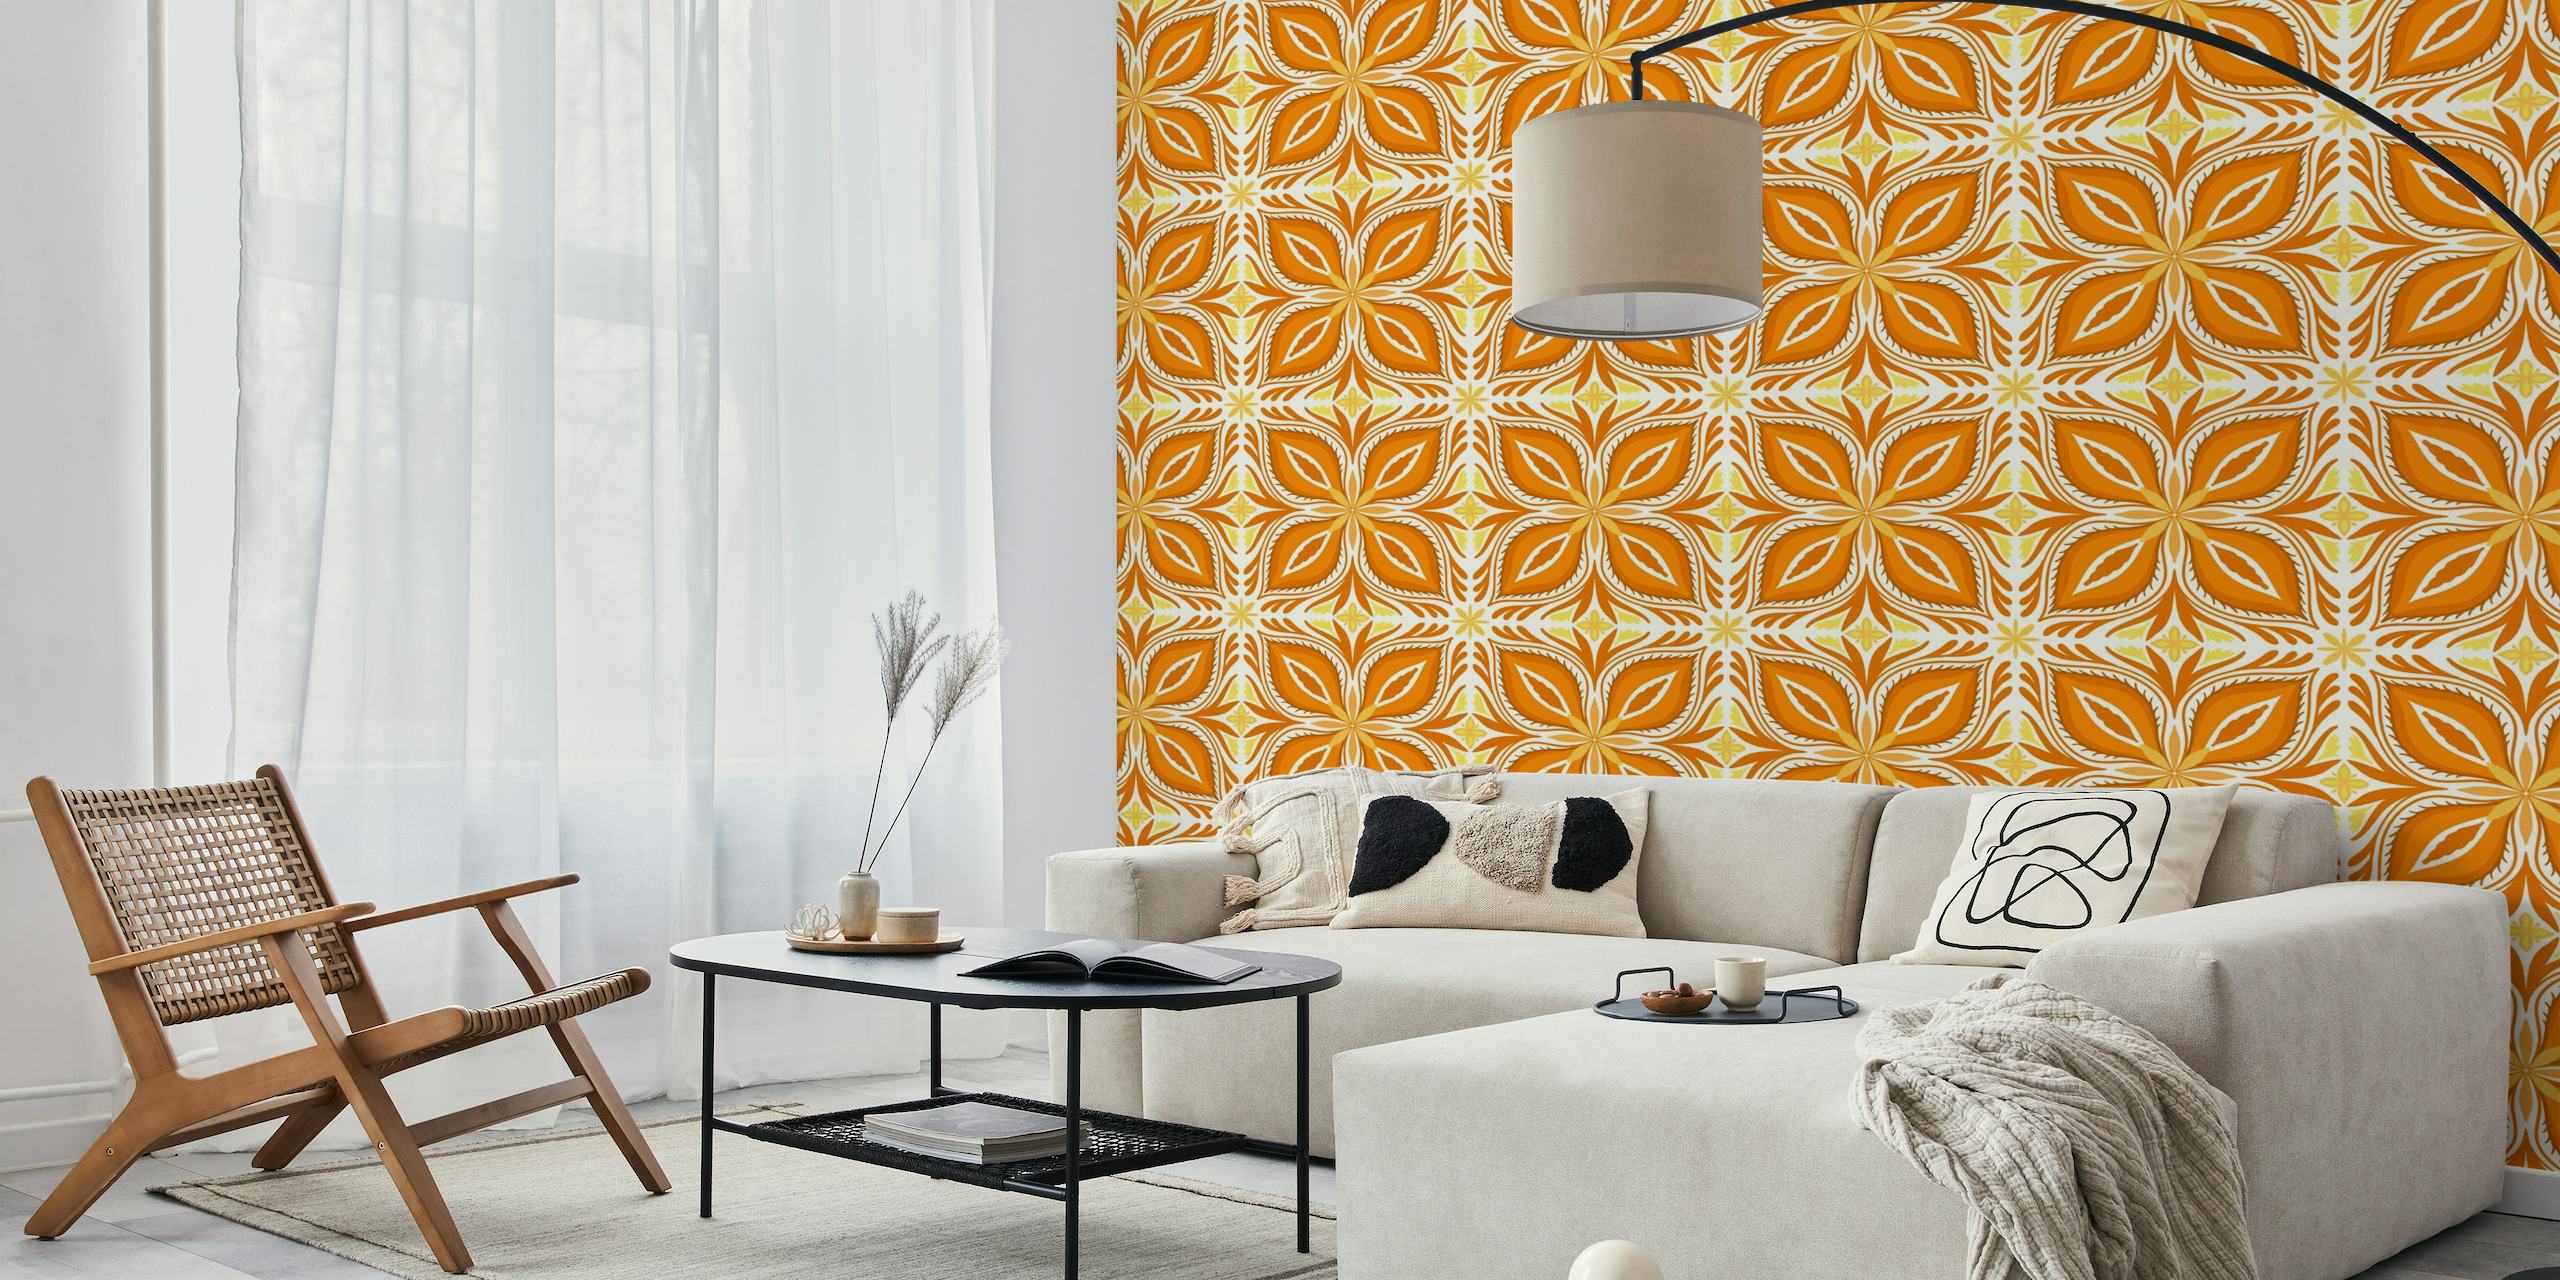 Ornate tiles, yellow and orange 7 papel pintado